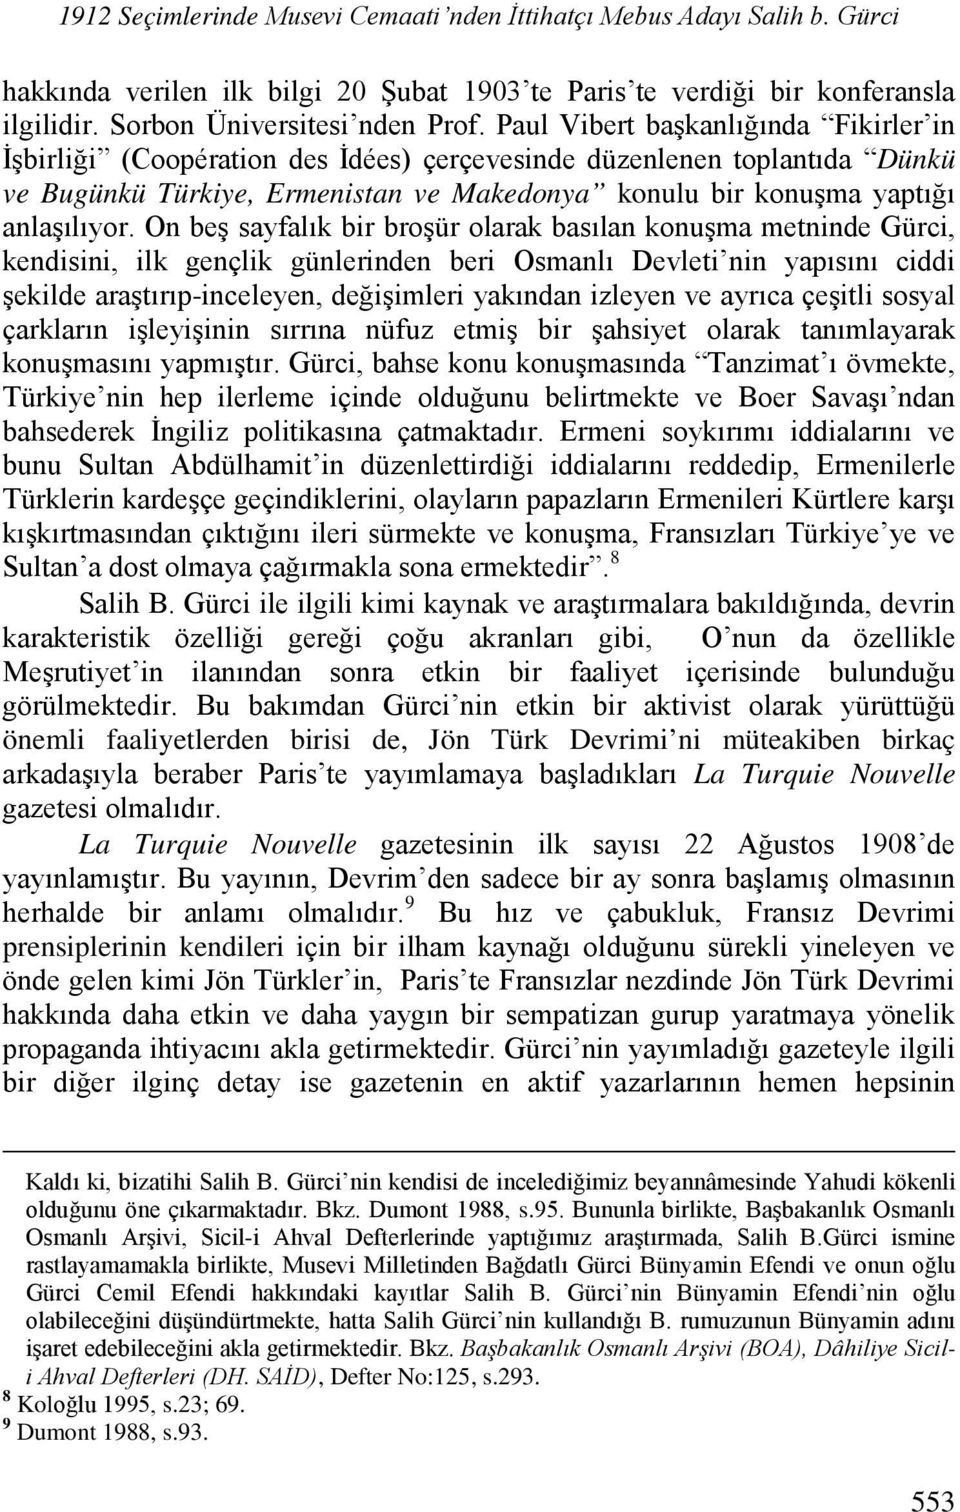 On beş sayfalık bir broşür olarak basılan konuşma metninde Gürci, kendisini, ilk gençlik günlerinden beri Osmanlı Devleti nin yapısını ciddi şekilde araştırıp-inceleyen, değişimleri yakından izleyen